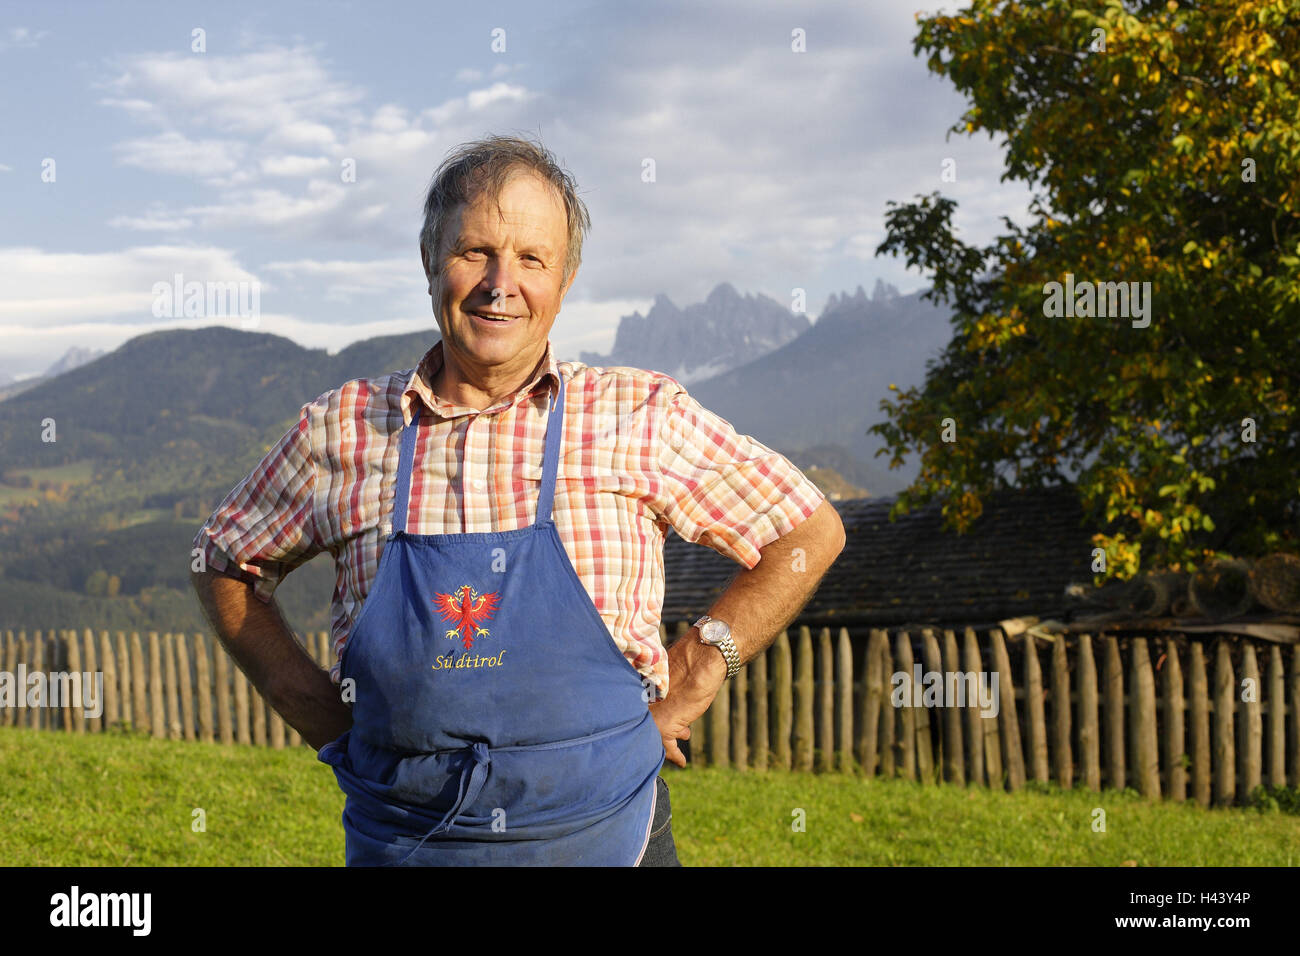 Italien, Südtirol, Mann, lokale, Schürze, Lächeln, Kamera anzeigen, Stockfoto